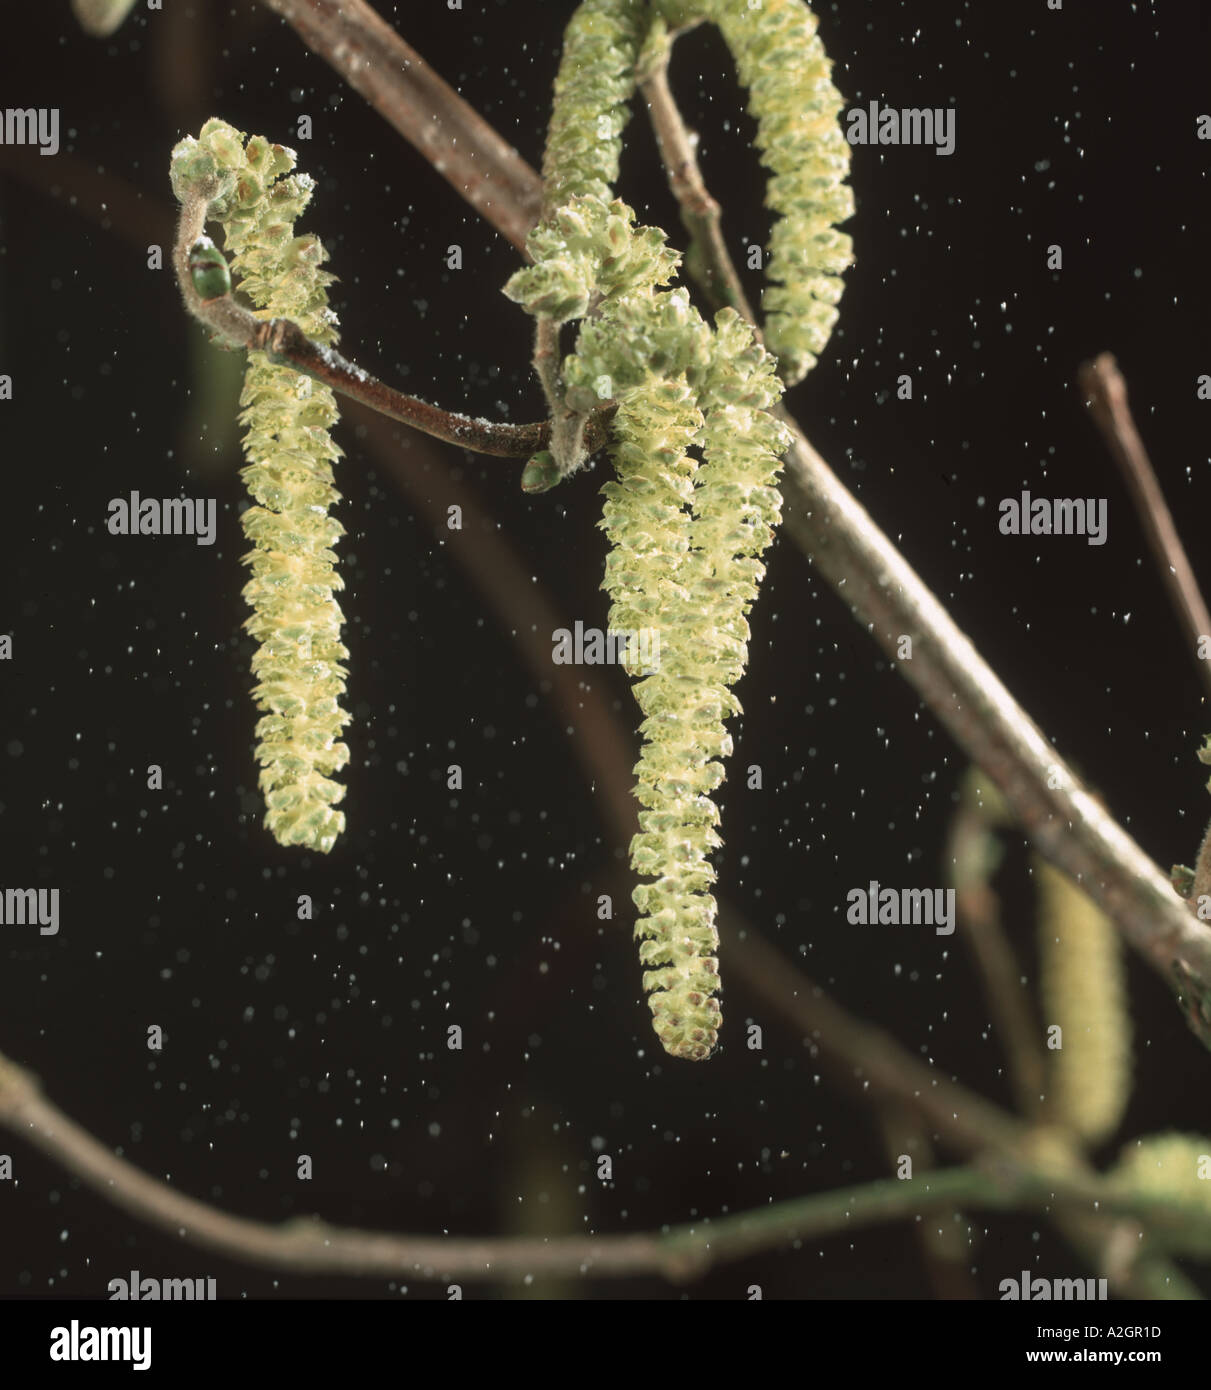 La dispersione del polline da amenti maschili sul nocciolo Corylus avellana Foto Stock